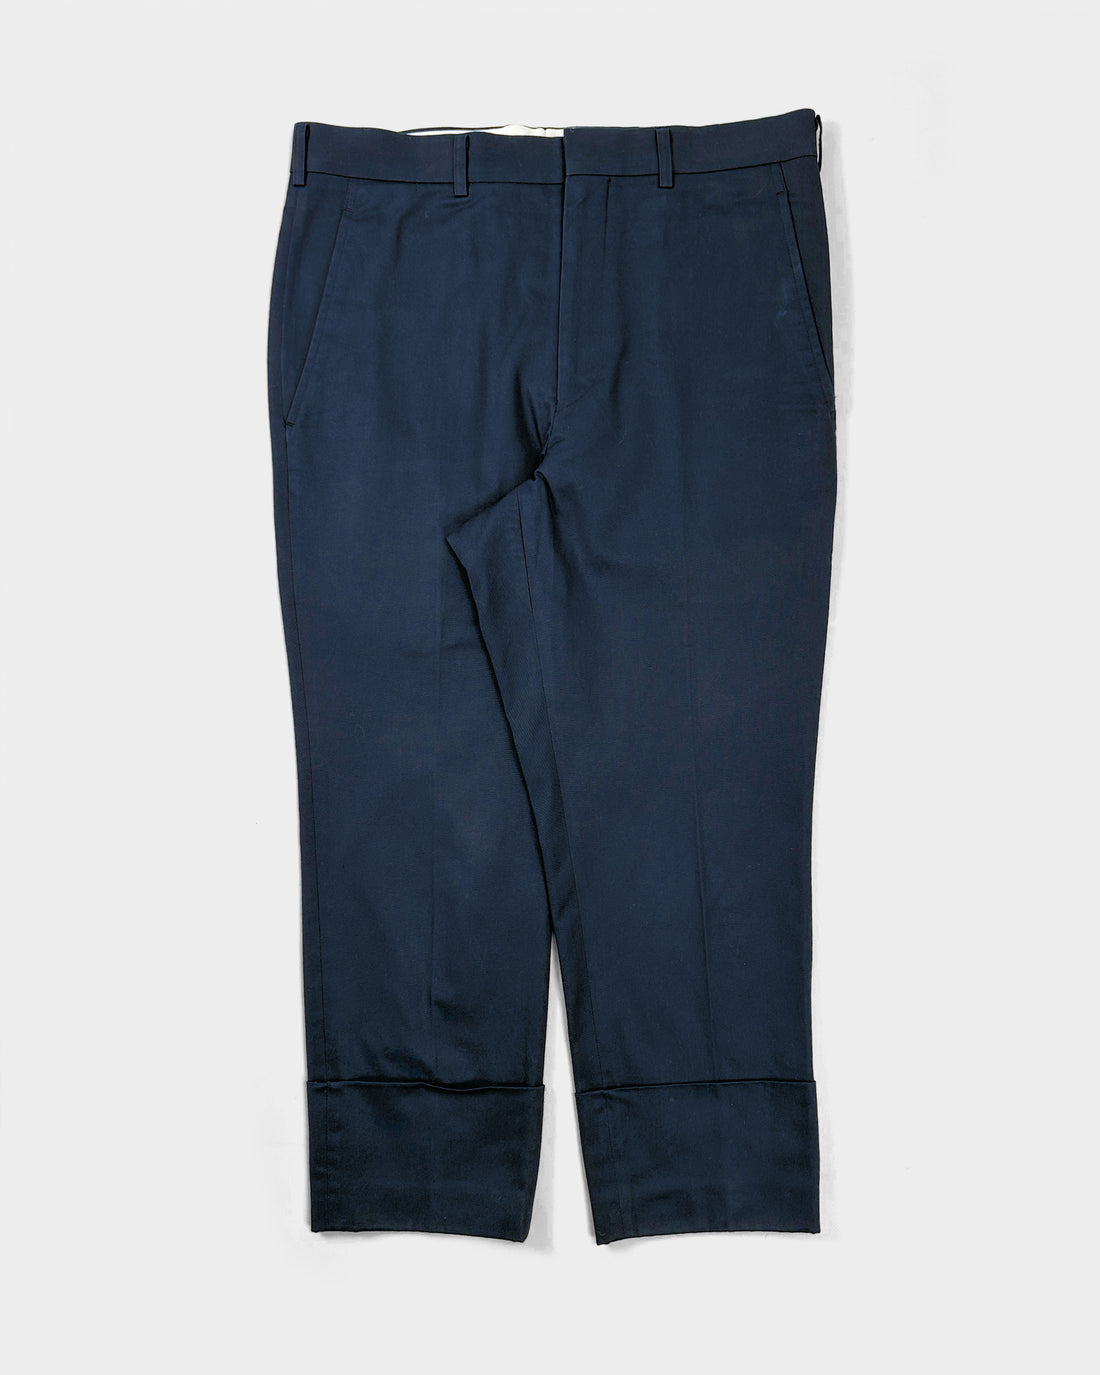 Comme Des Garçons Navy Blue Straight Suit Pants 2012